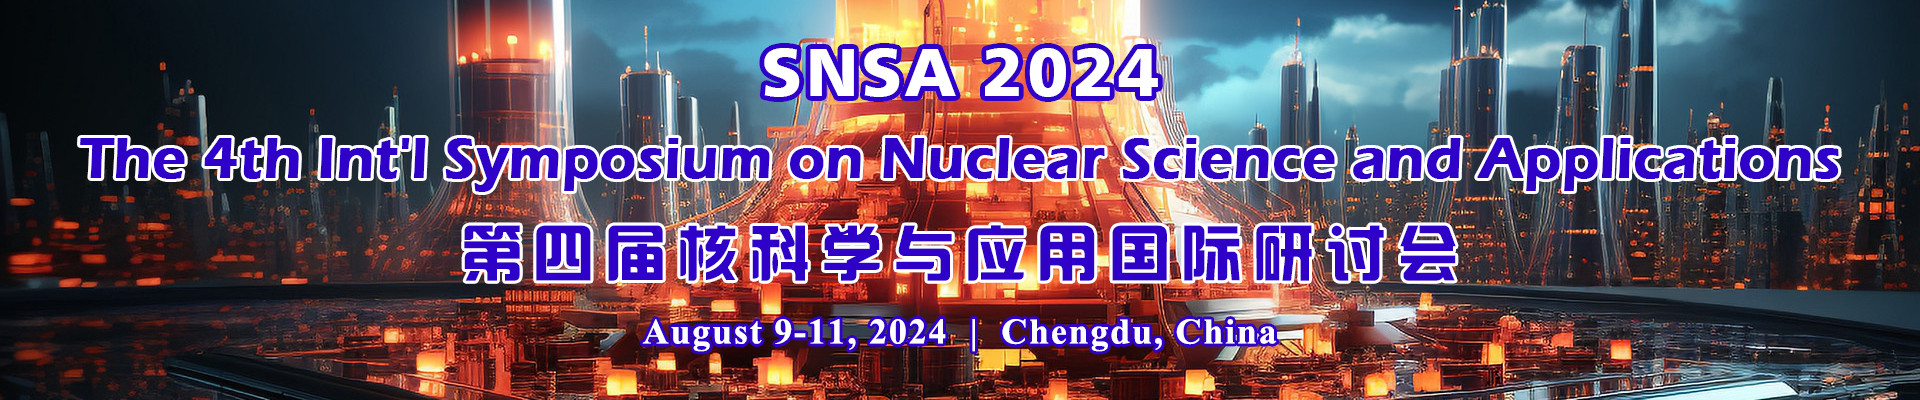 第四届核科学与应用国际研讨会SNSA 2024